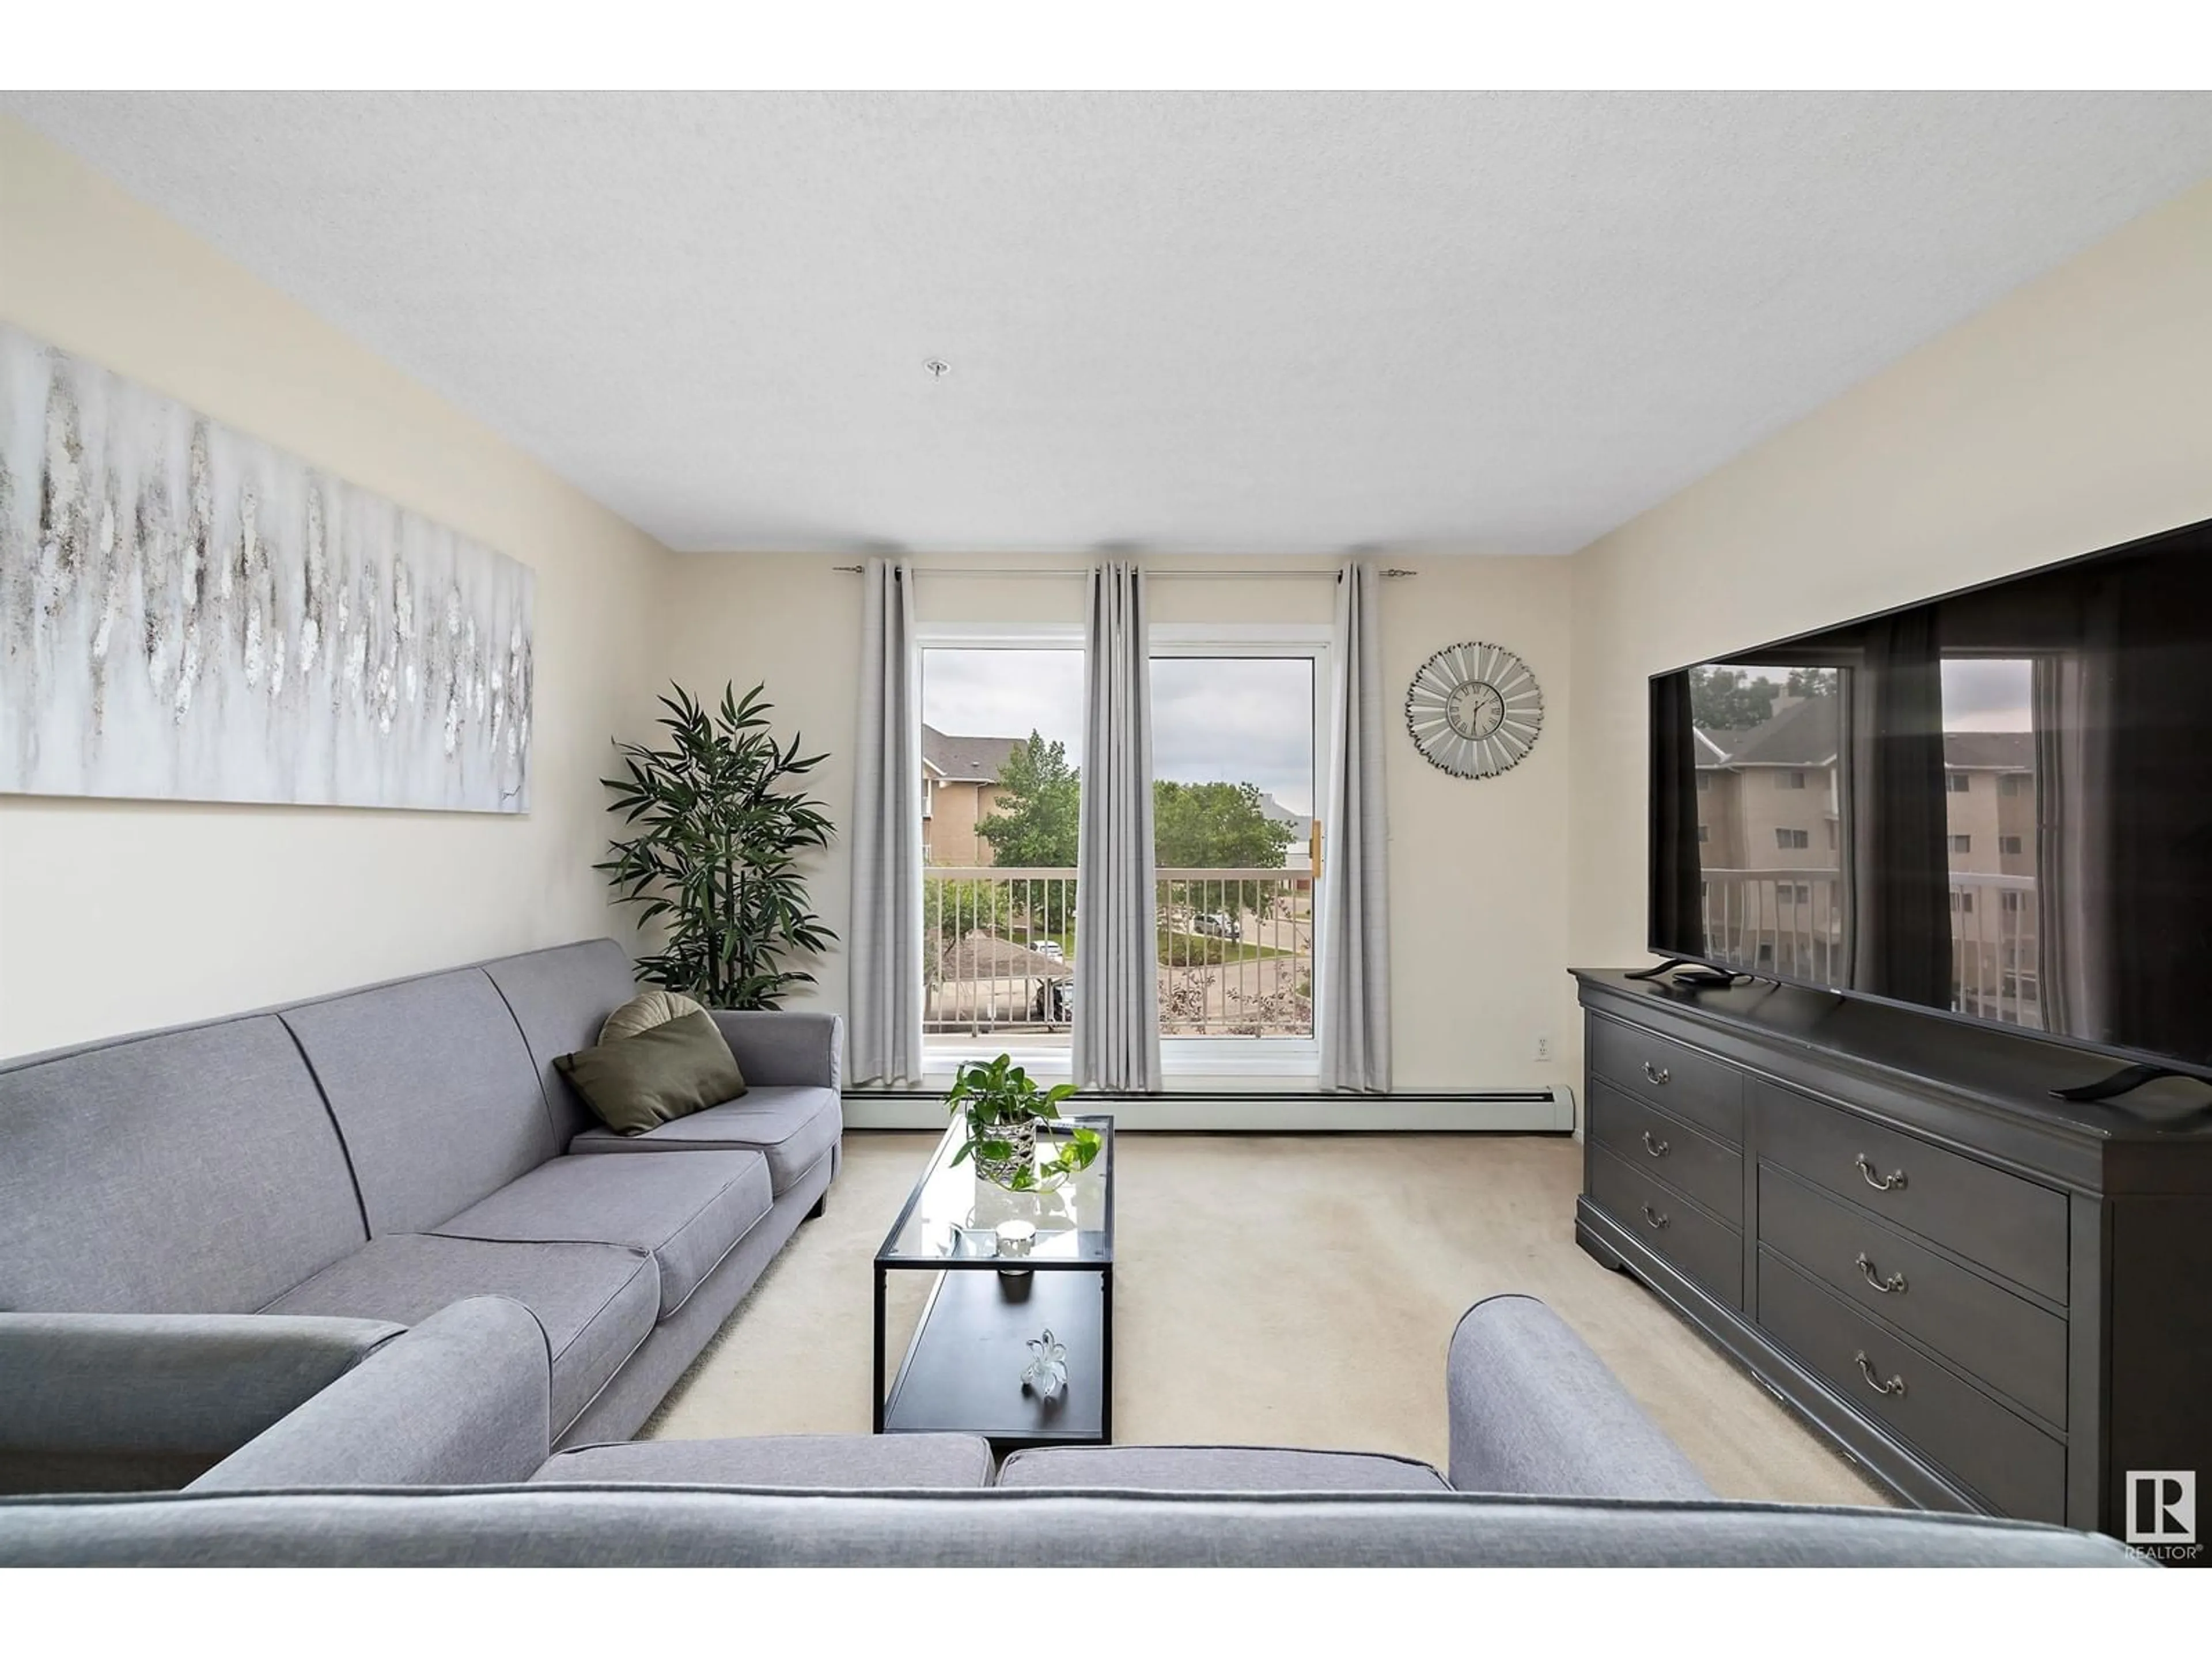 Living room for #337 17447 98A AV NW, Edmonton Alberta T5T6M4